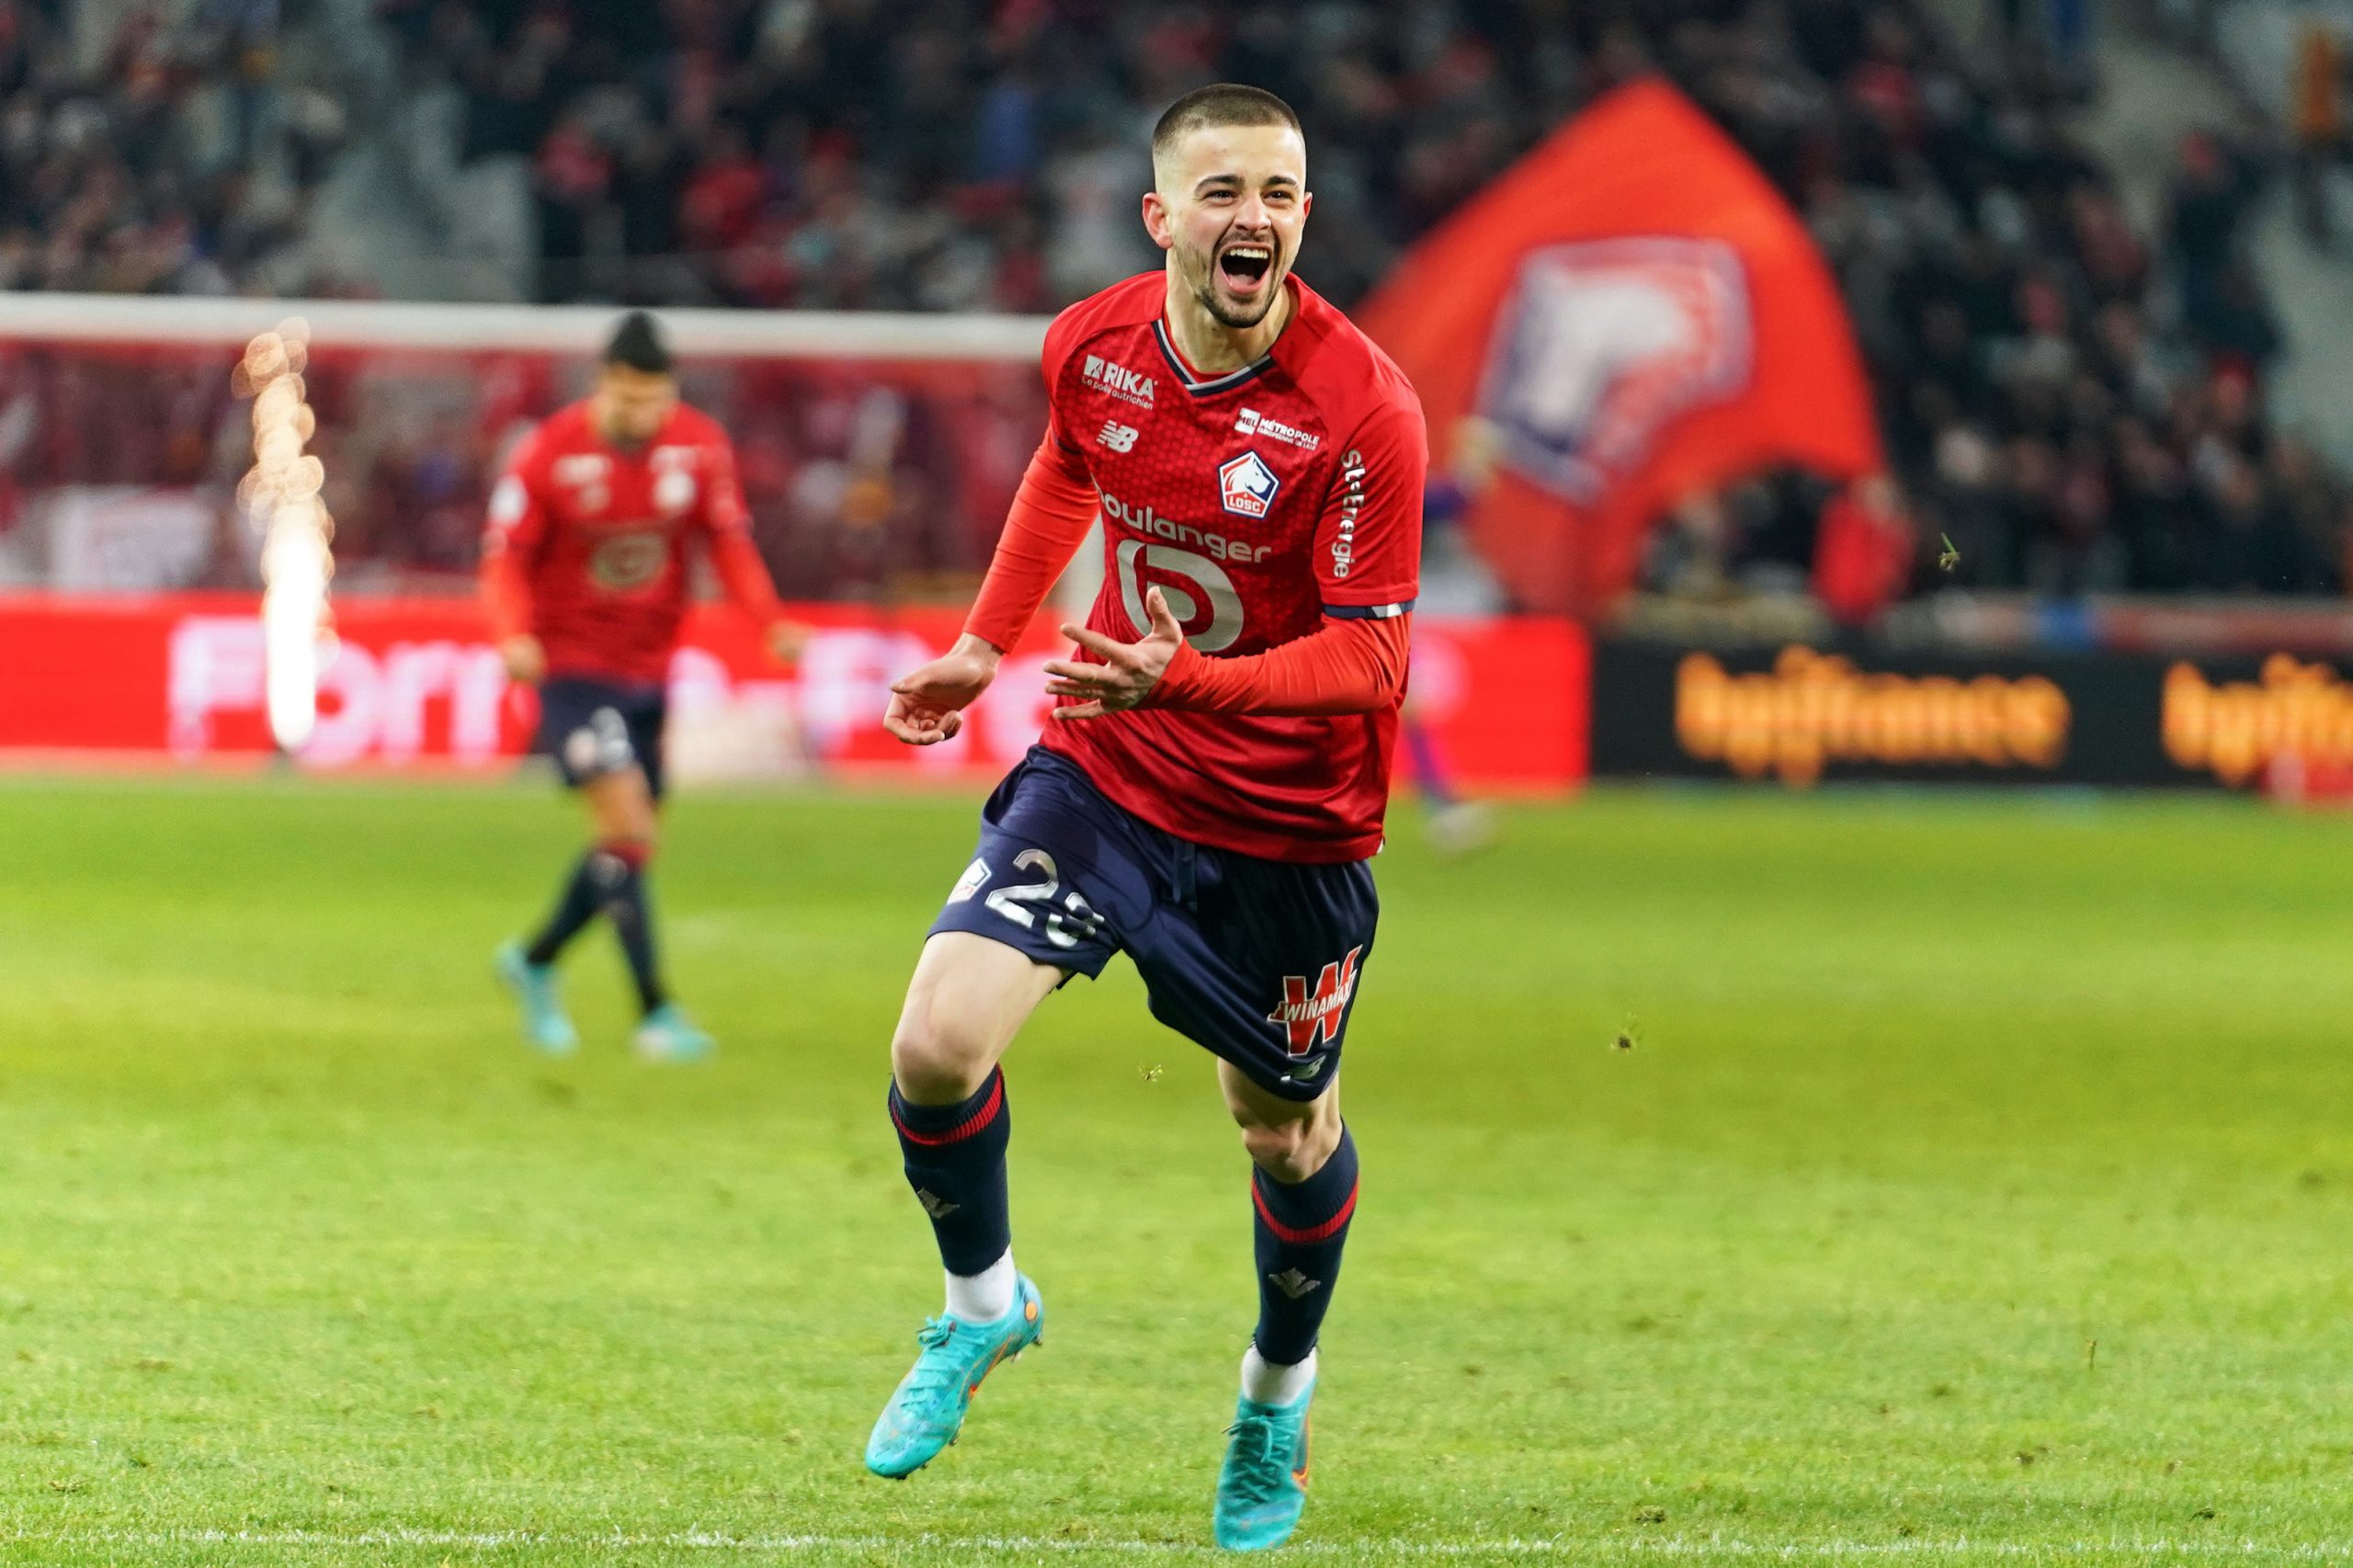 “Sa lojtar i veçantë”, Faqja zyrtare e ‘Ligue 1’ e çon në qiell Edon Zhegrovën